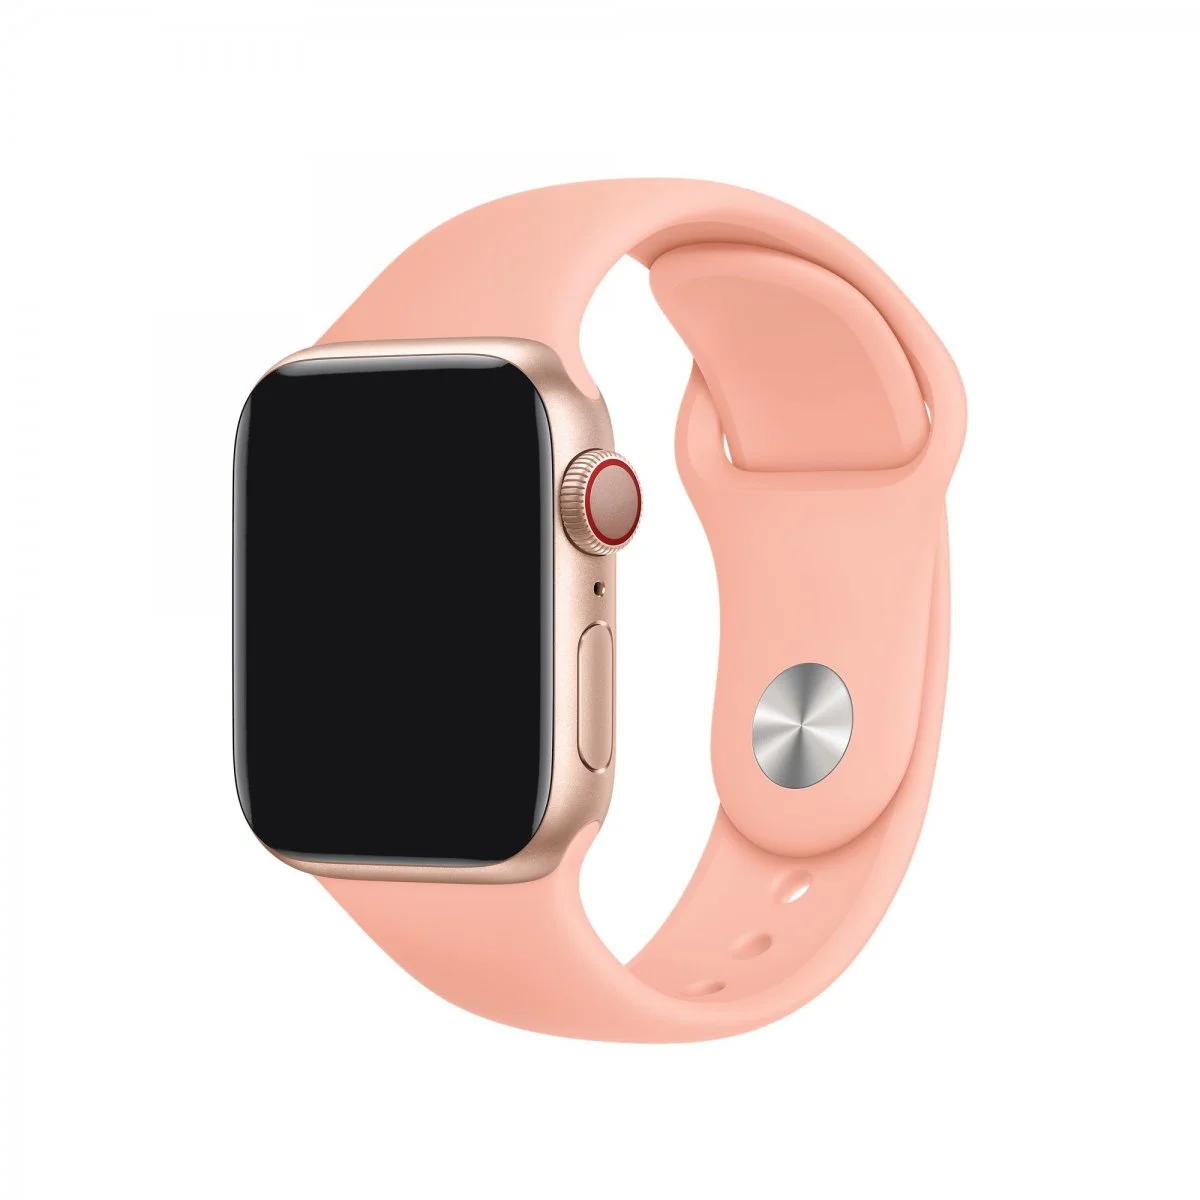 Řemínek iMore SmoothBand pro Apple Watch Series 1/2/3 (38mm) - Grepově růžový